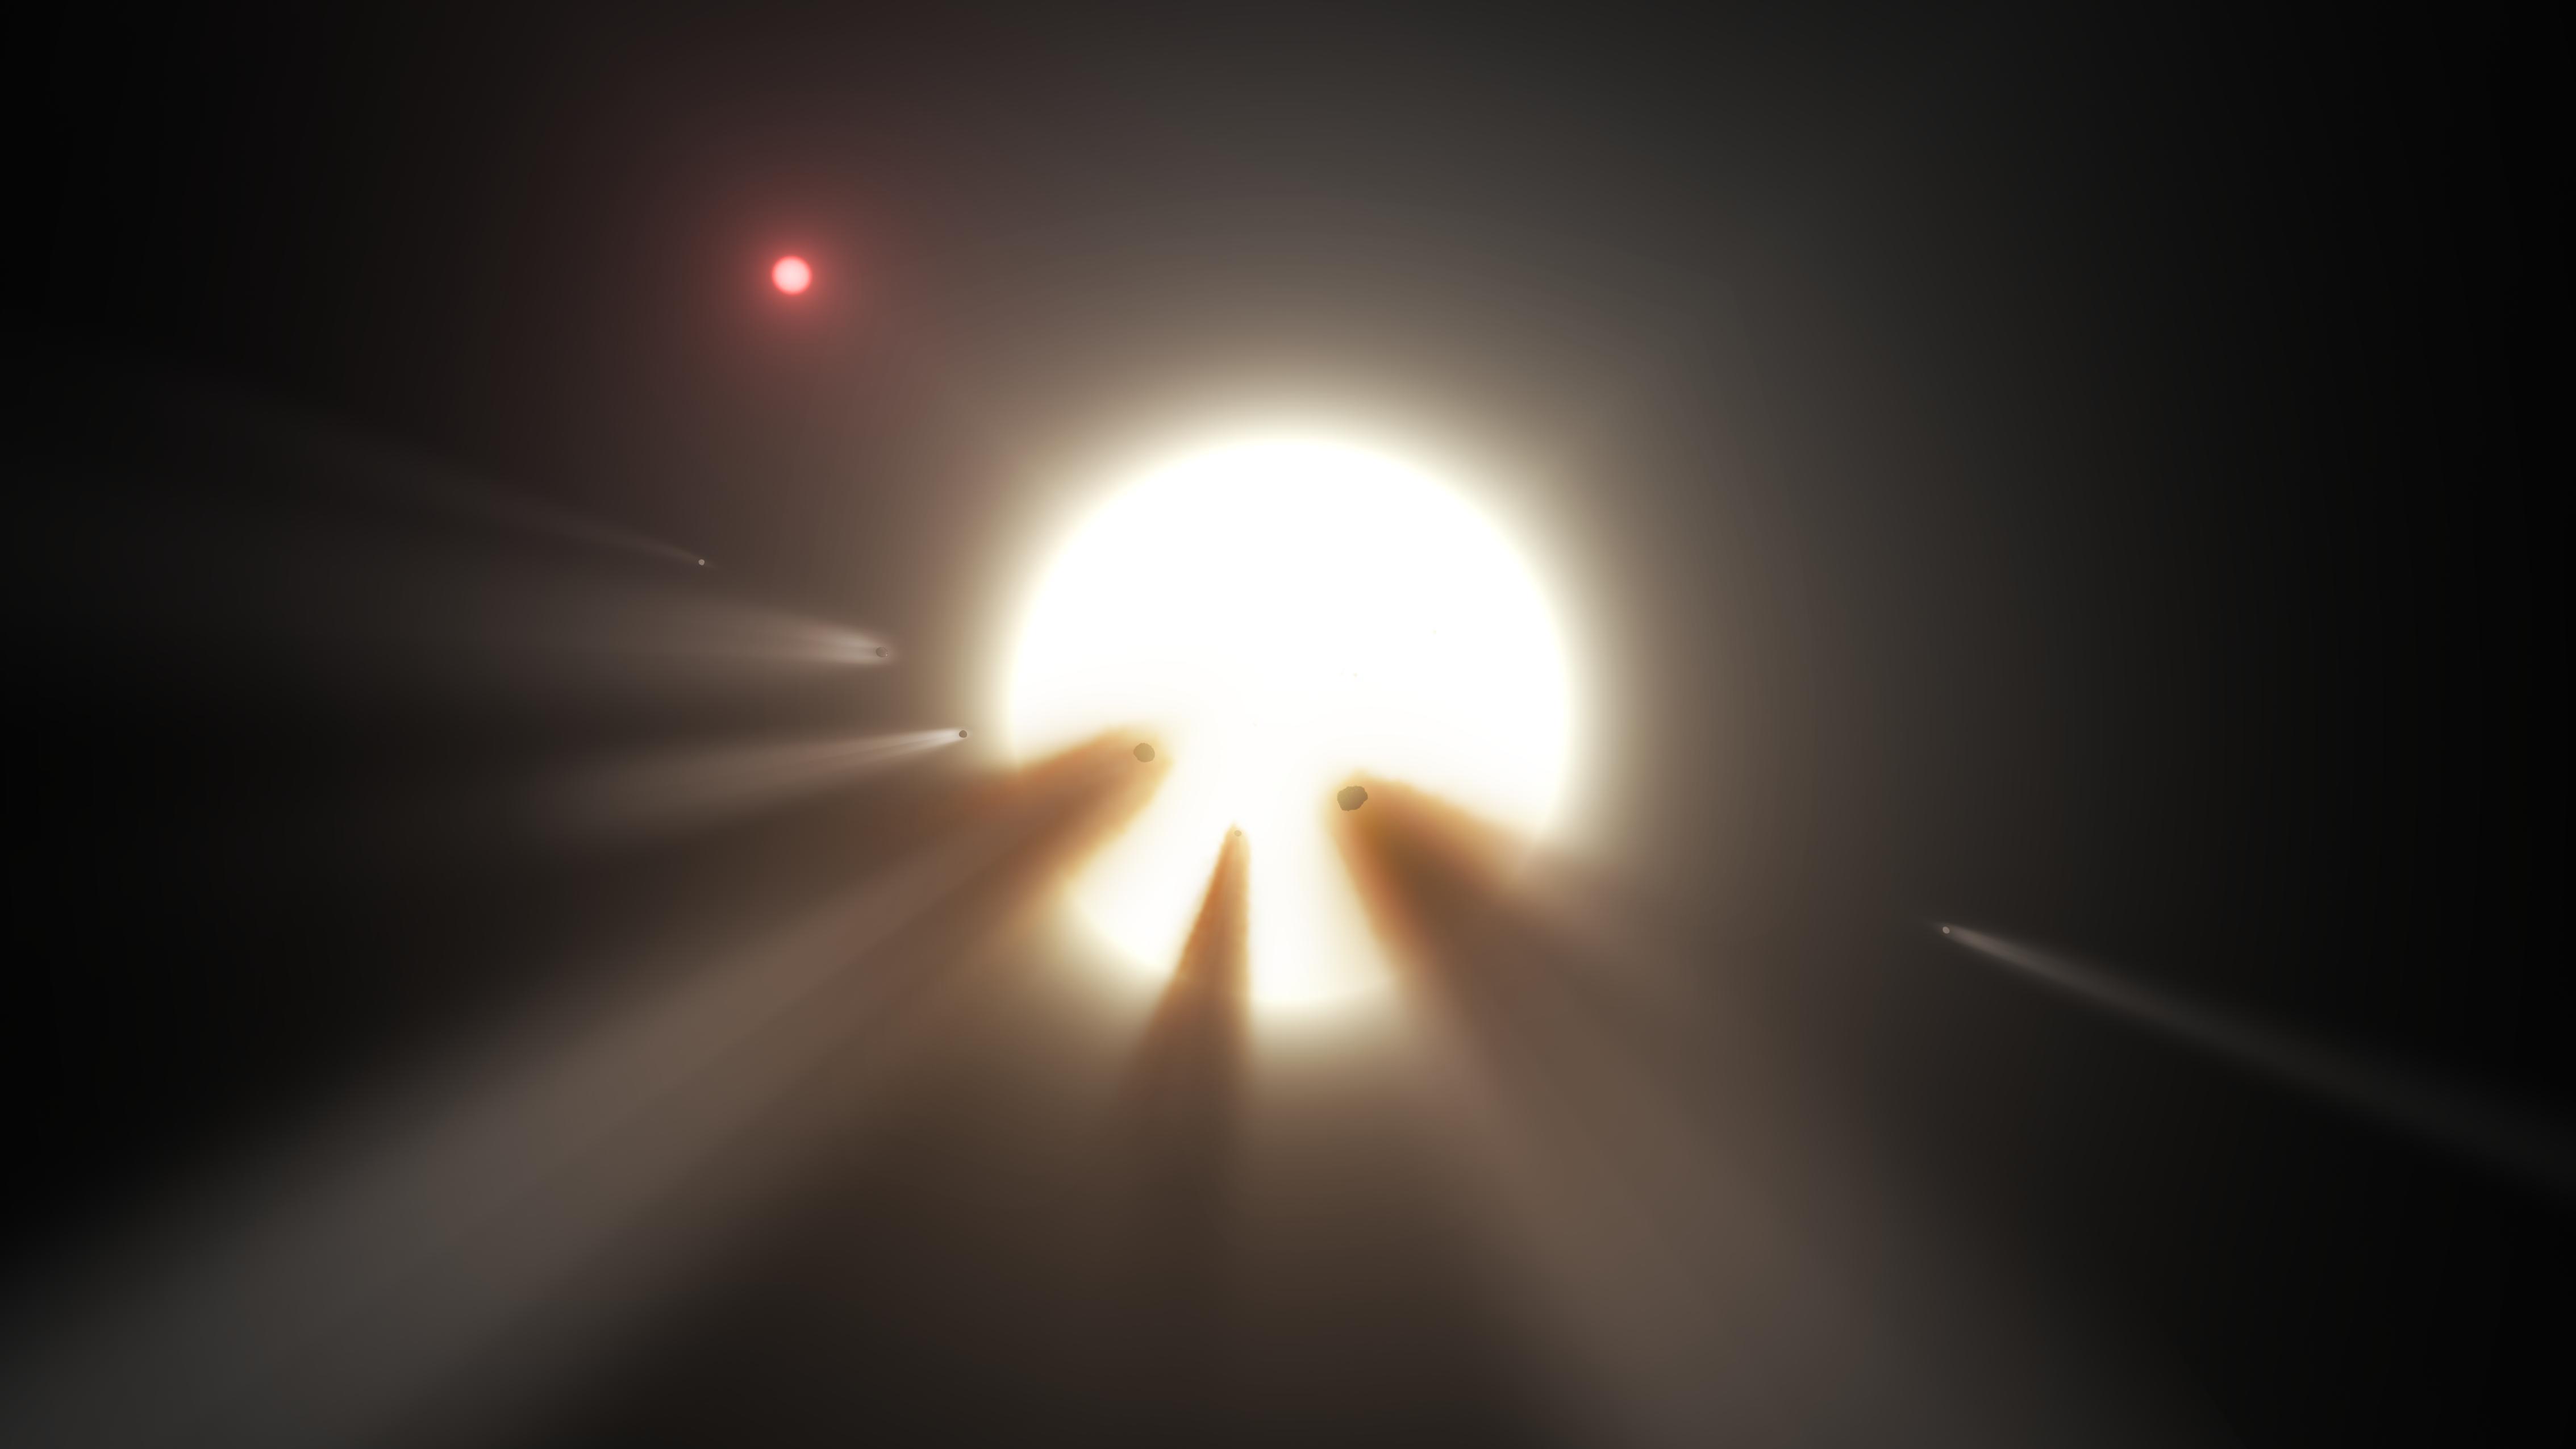 Visión artística de una estrella oscurecida por un cometa hecho añicos. Fuente: NASA/JPL-Caltech.